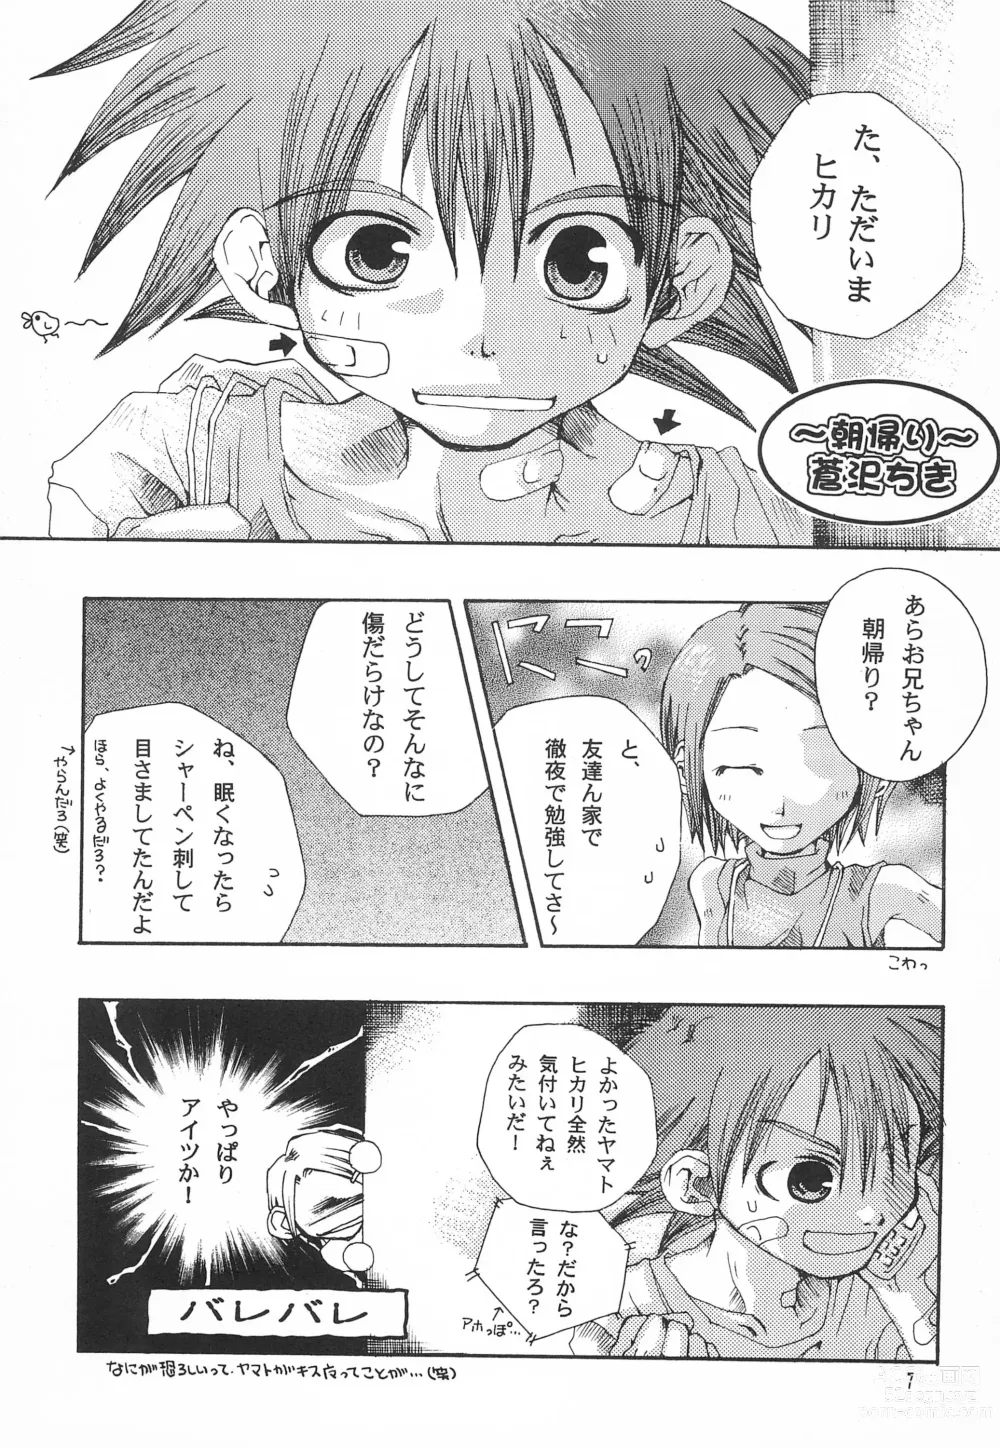 Page 9 of doujinshi Utsukushiki Samazama no Yume